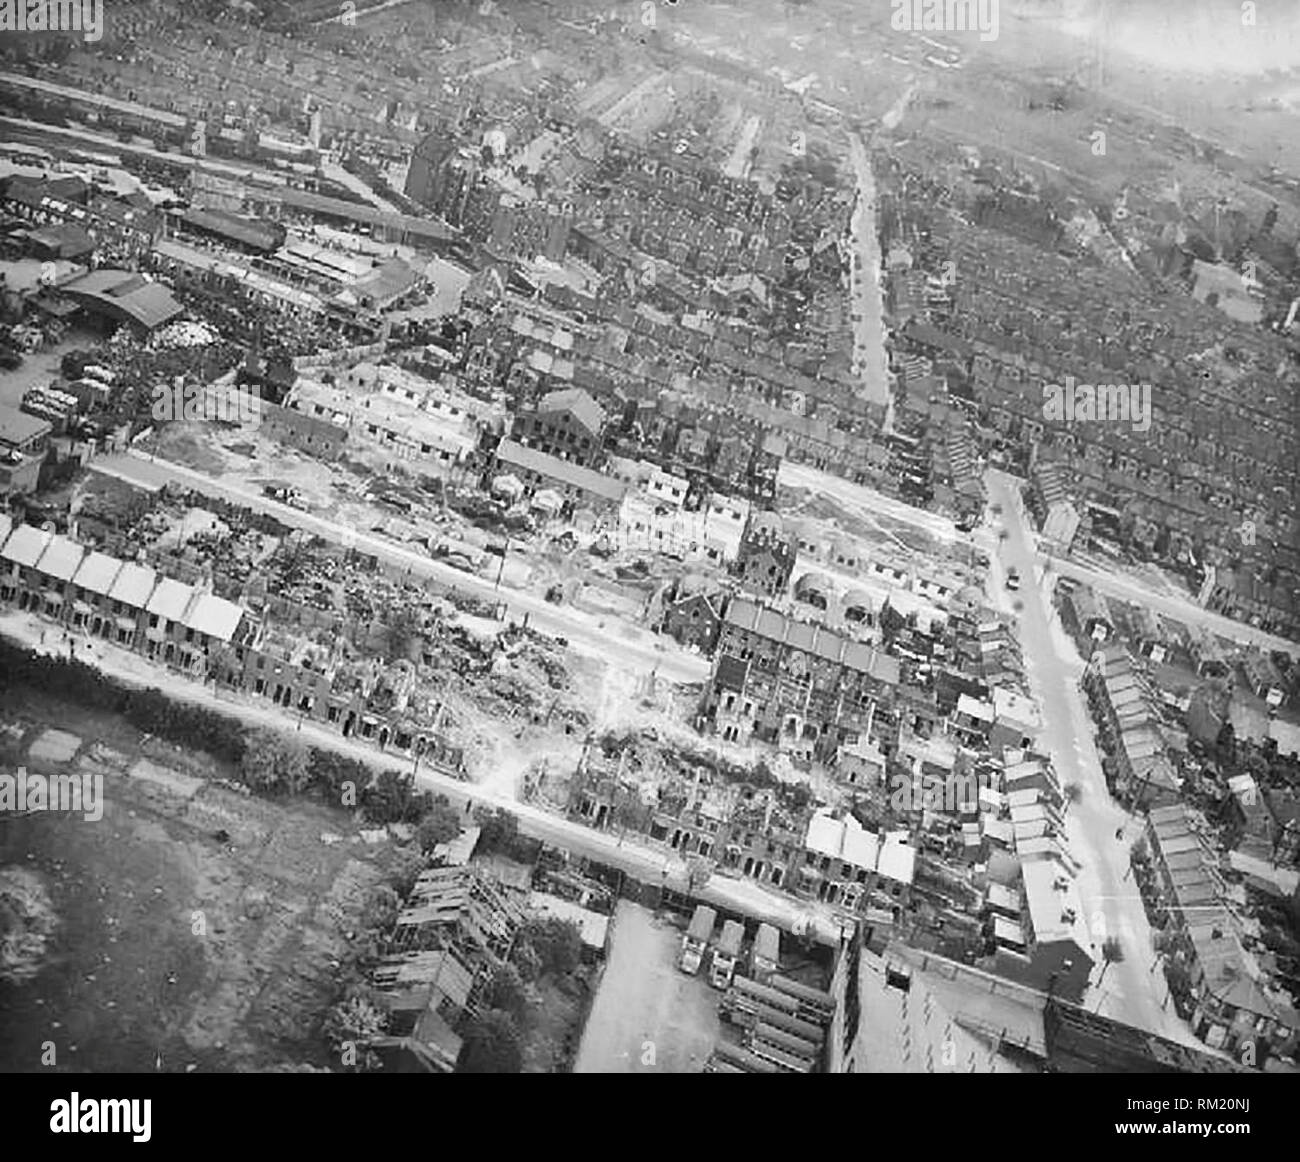 Dommages à la bombe à Londres, en Angleterre, avril 1945 Vue aérienne de l'ouest du dommage résultant d'un V2 rocket missile qui a explosé dans la région de Boleyn et Prieuré de routes, Upton Park, East Ham, London E6, en Angleterre, à 10h30 le 28 janvier 1945. Seize personnes ont été tués, vingt-sept blessés graves et soixante-neuf légèrement blessé. 5 maisons ont été complètement détruites, 16 partiellement démolies et 59 autres ont été gravement endommagées. Banque D'Images